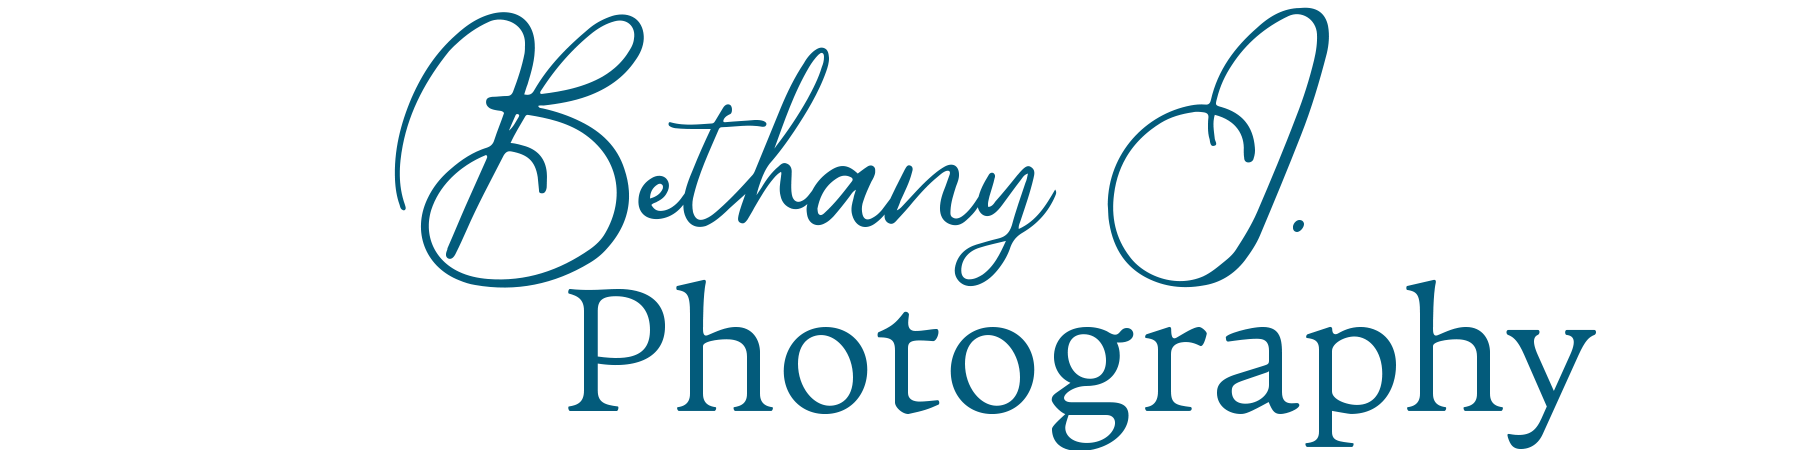 Bethany J. Photography